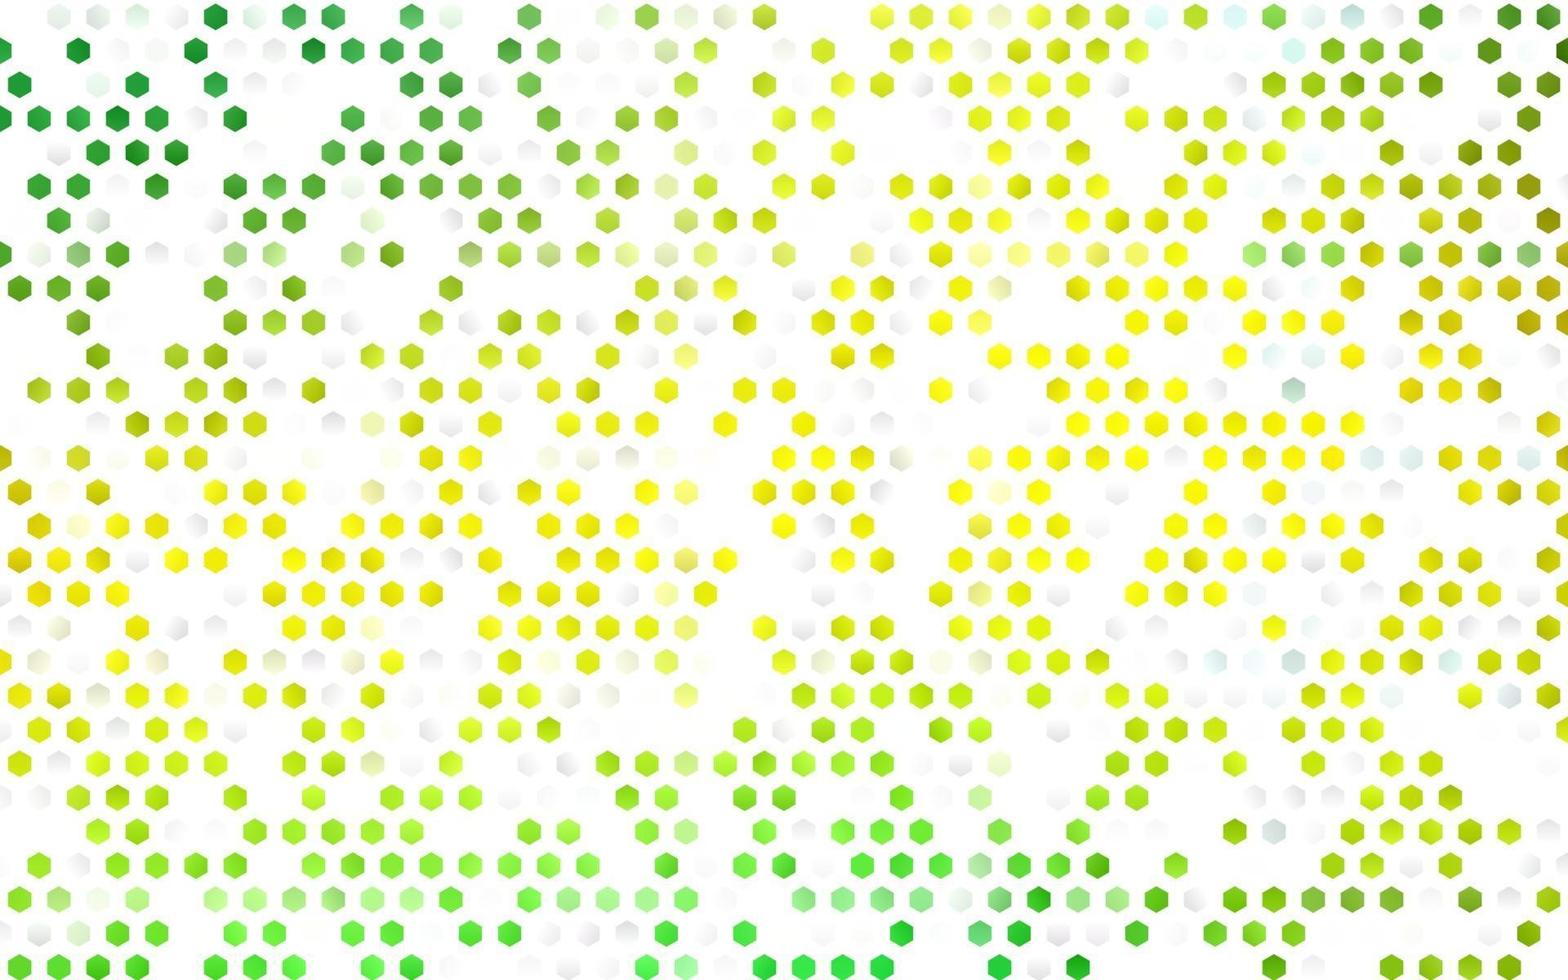 ljusgrön, gul vektorbakgrund med hexagoner. vektor